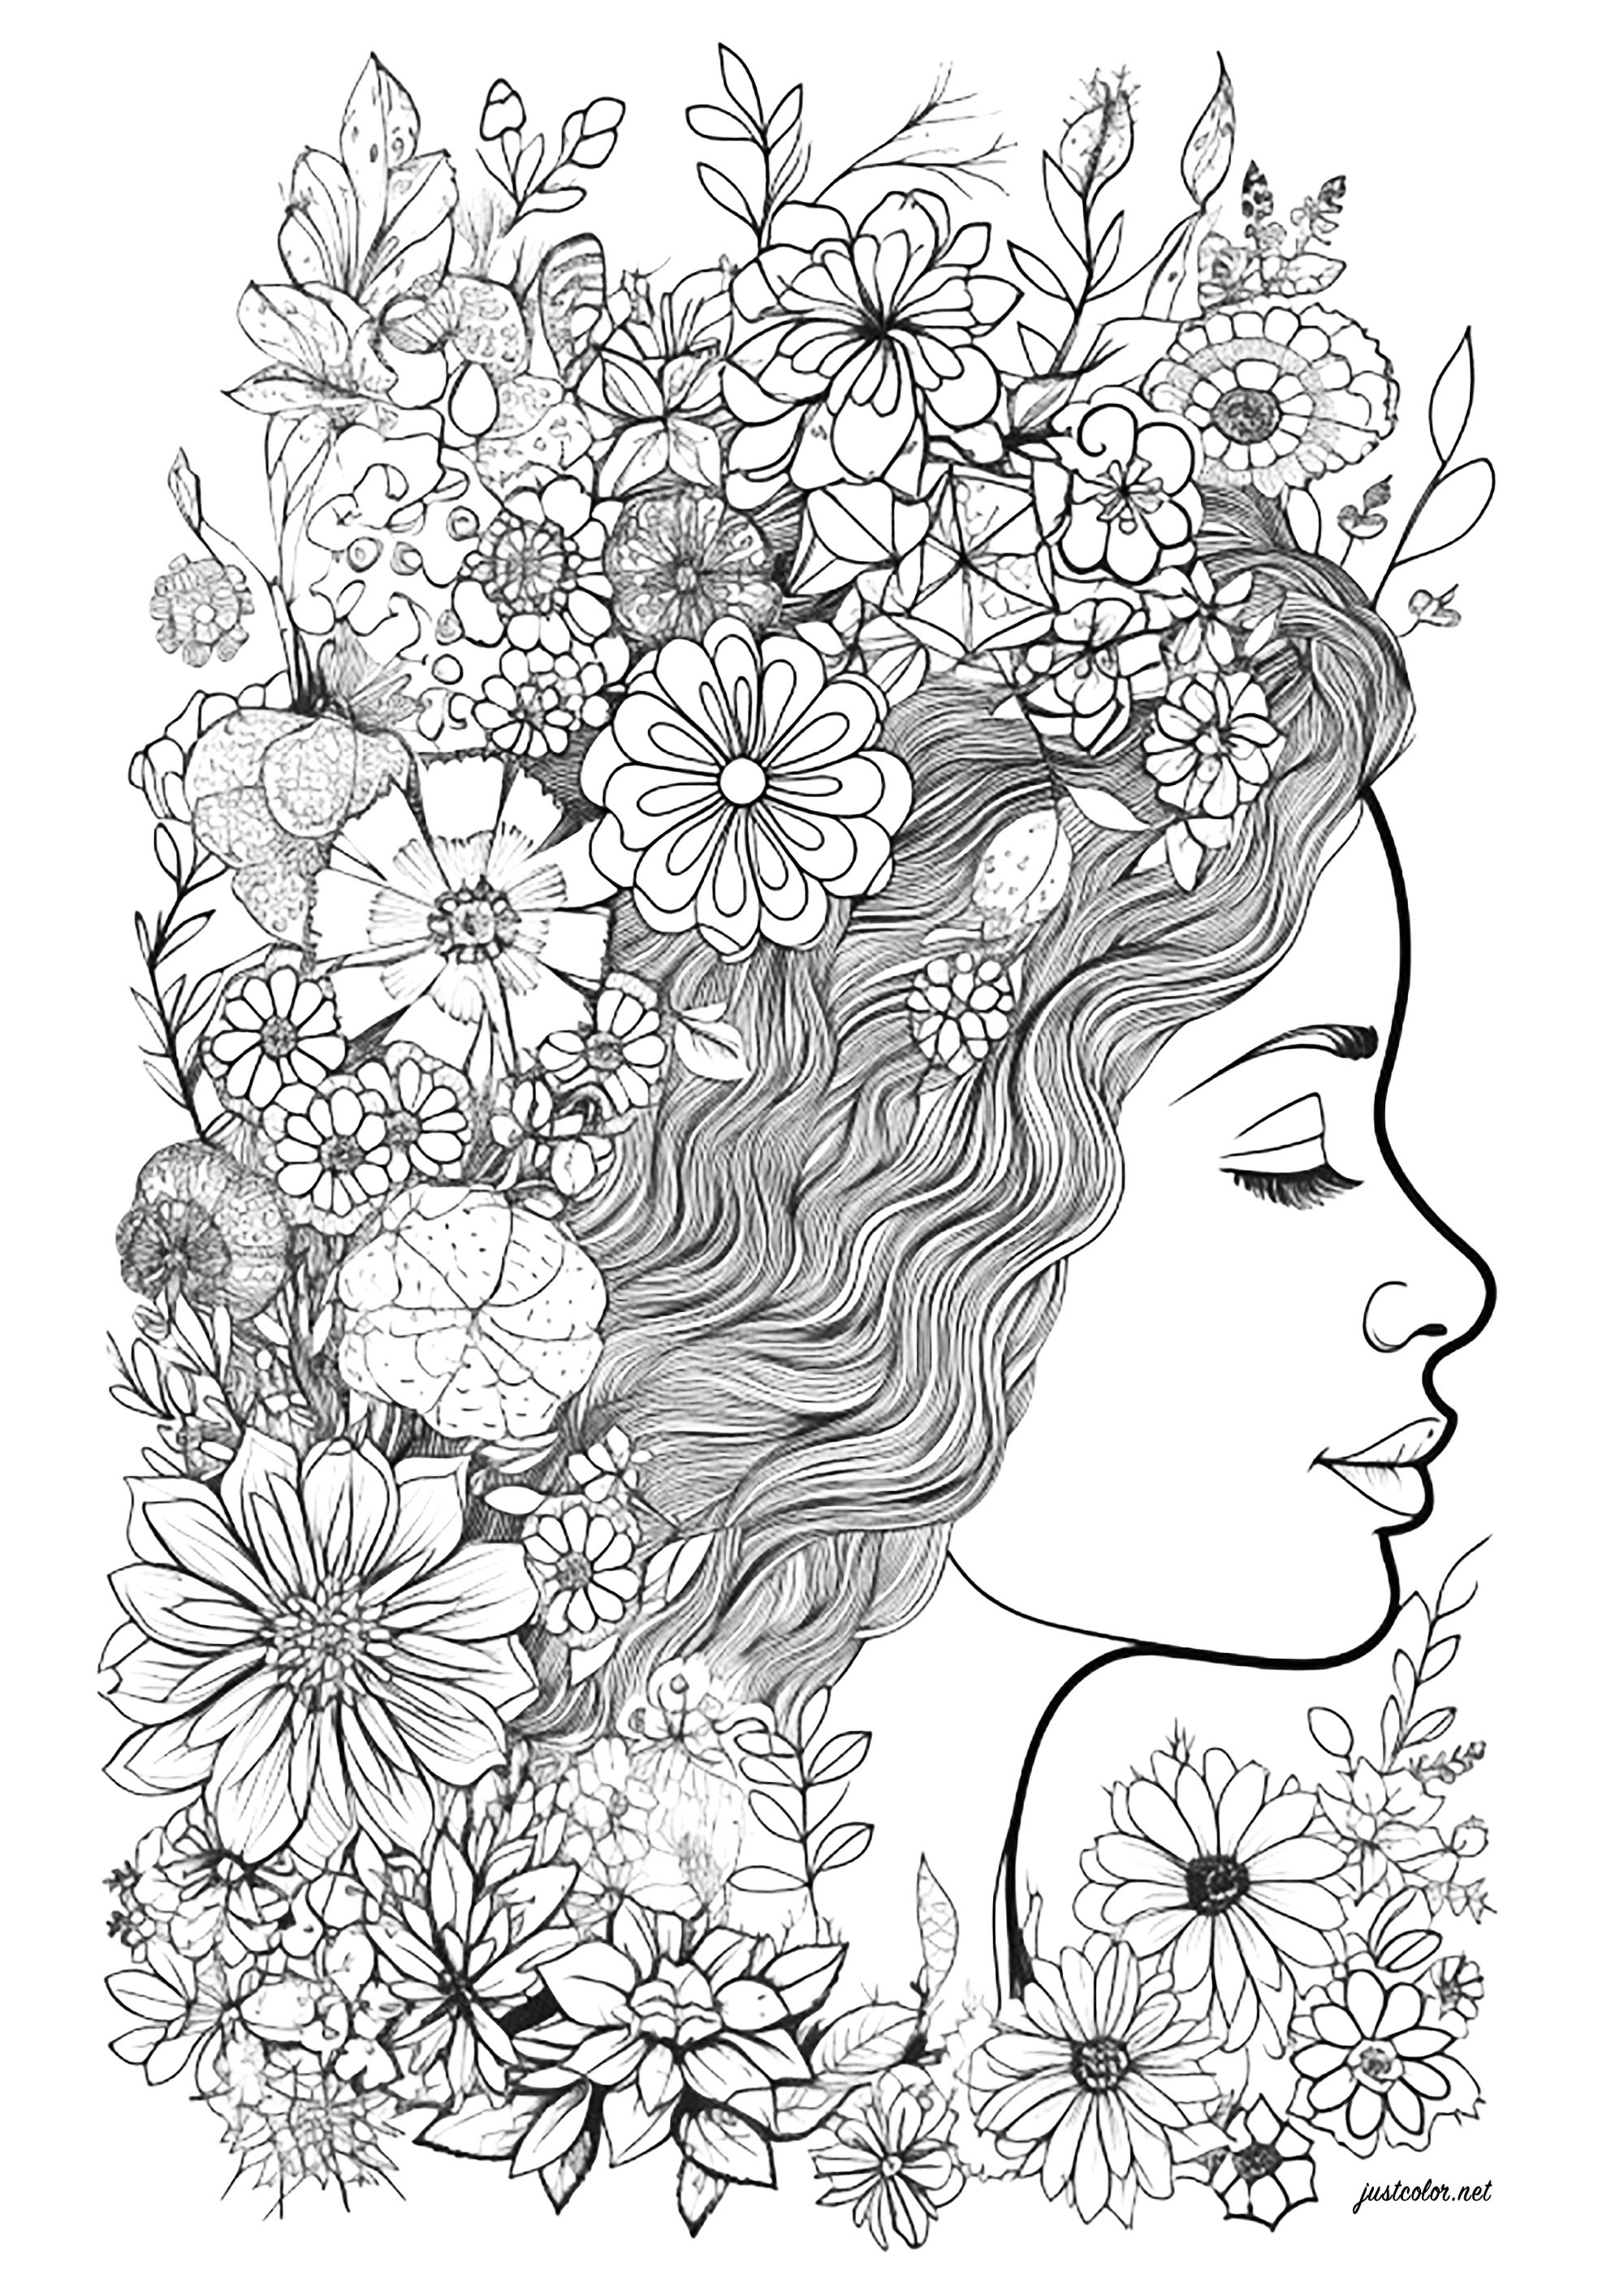 Rosto de uma mulher de perfil, rodeada de flores. Pinta todas estas lindas flores no cabelo desta mulher